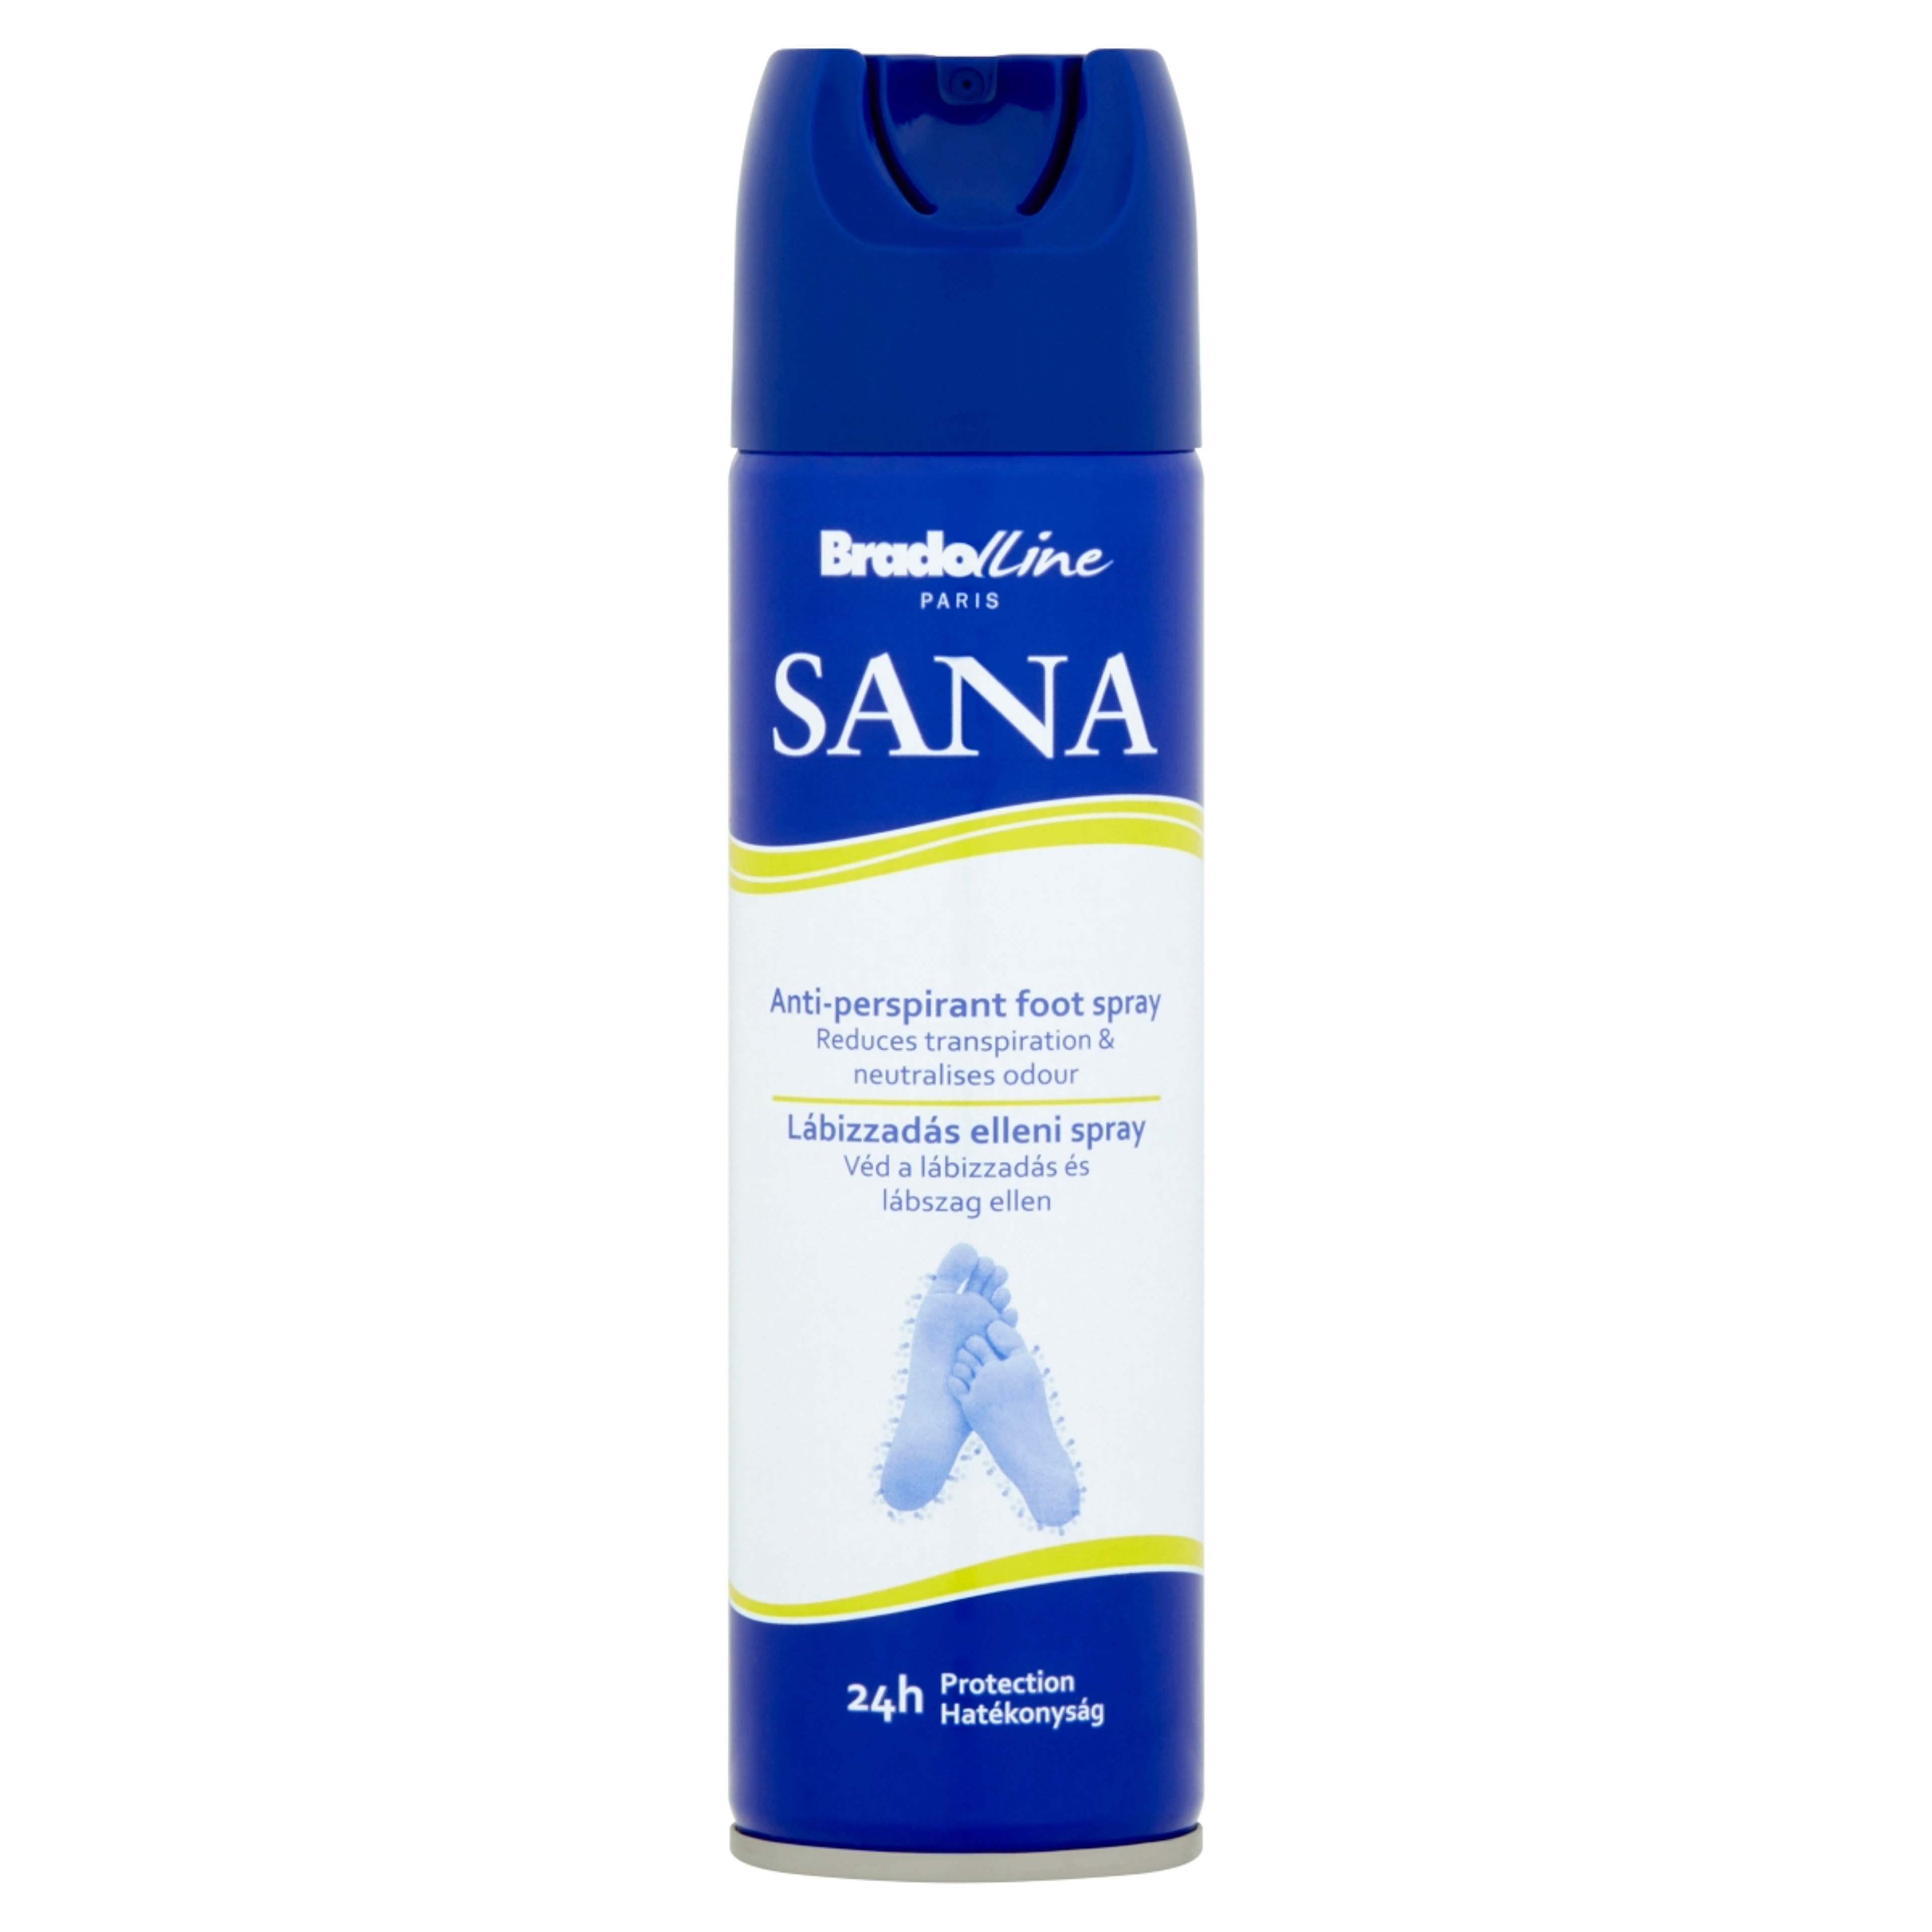 Sana lábizzadás elleni spray - 150 ml